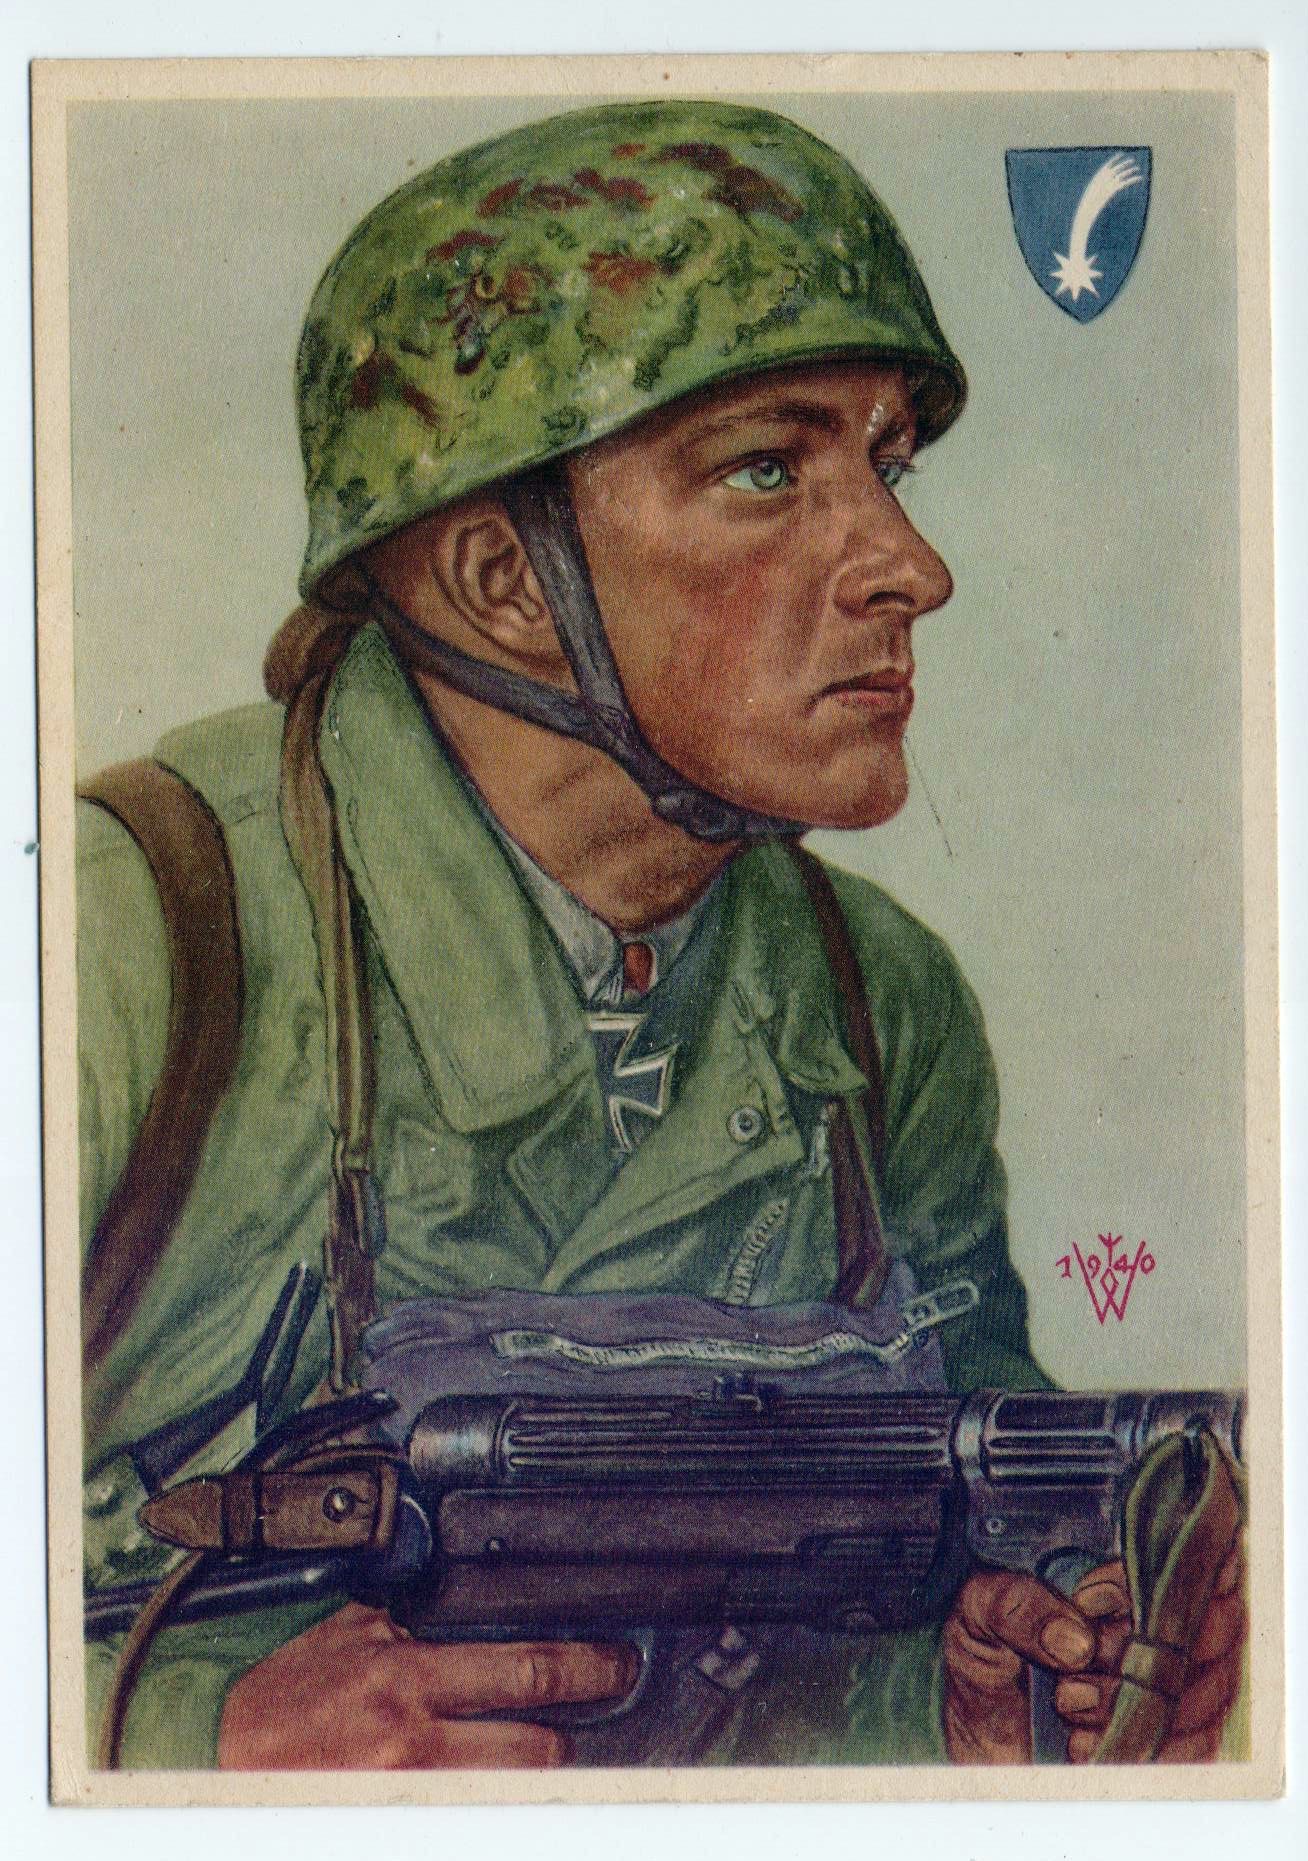 Парашютист-десантник фельдфебель Арпке, 1940 год.